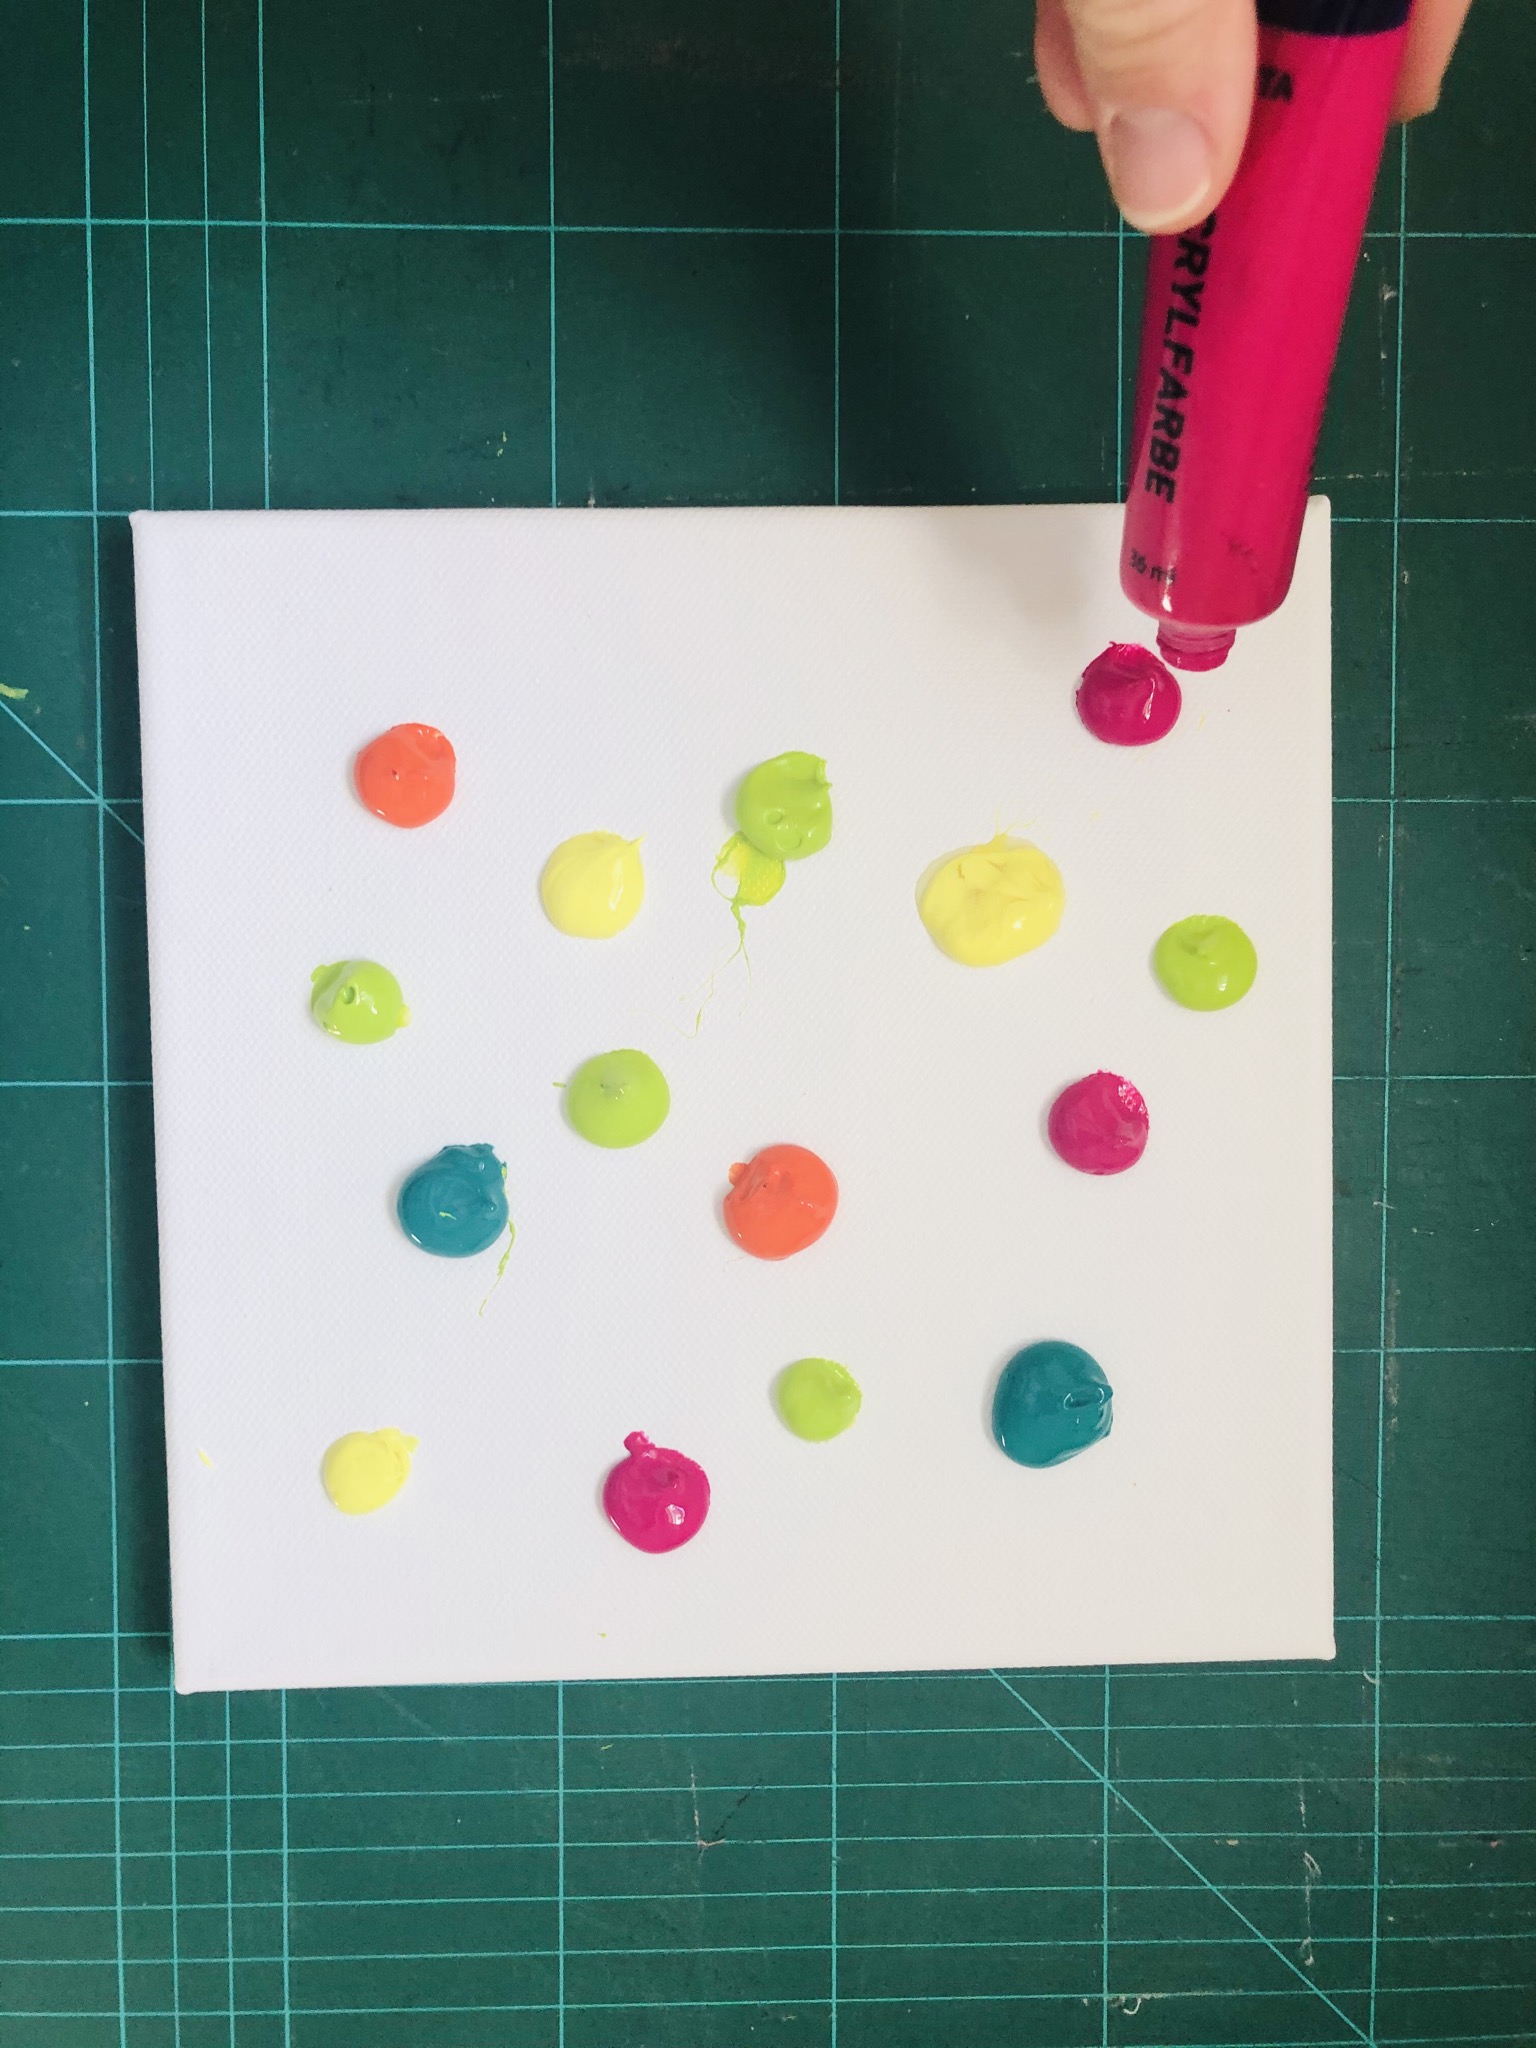 Bild zum Schritt 2 für das Bastel- und DIY-Abenteuer für Kinder: 'Lieblingsfarben „aufklecksen“  Achtung: zu viele Farben ergeben braun!'